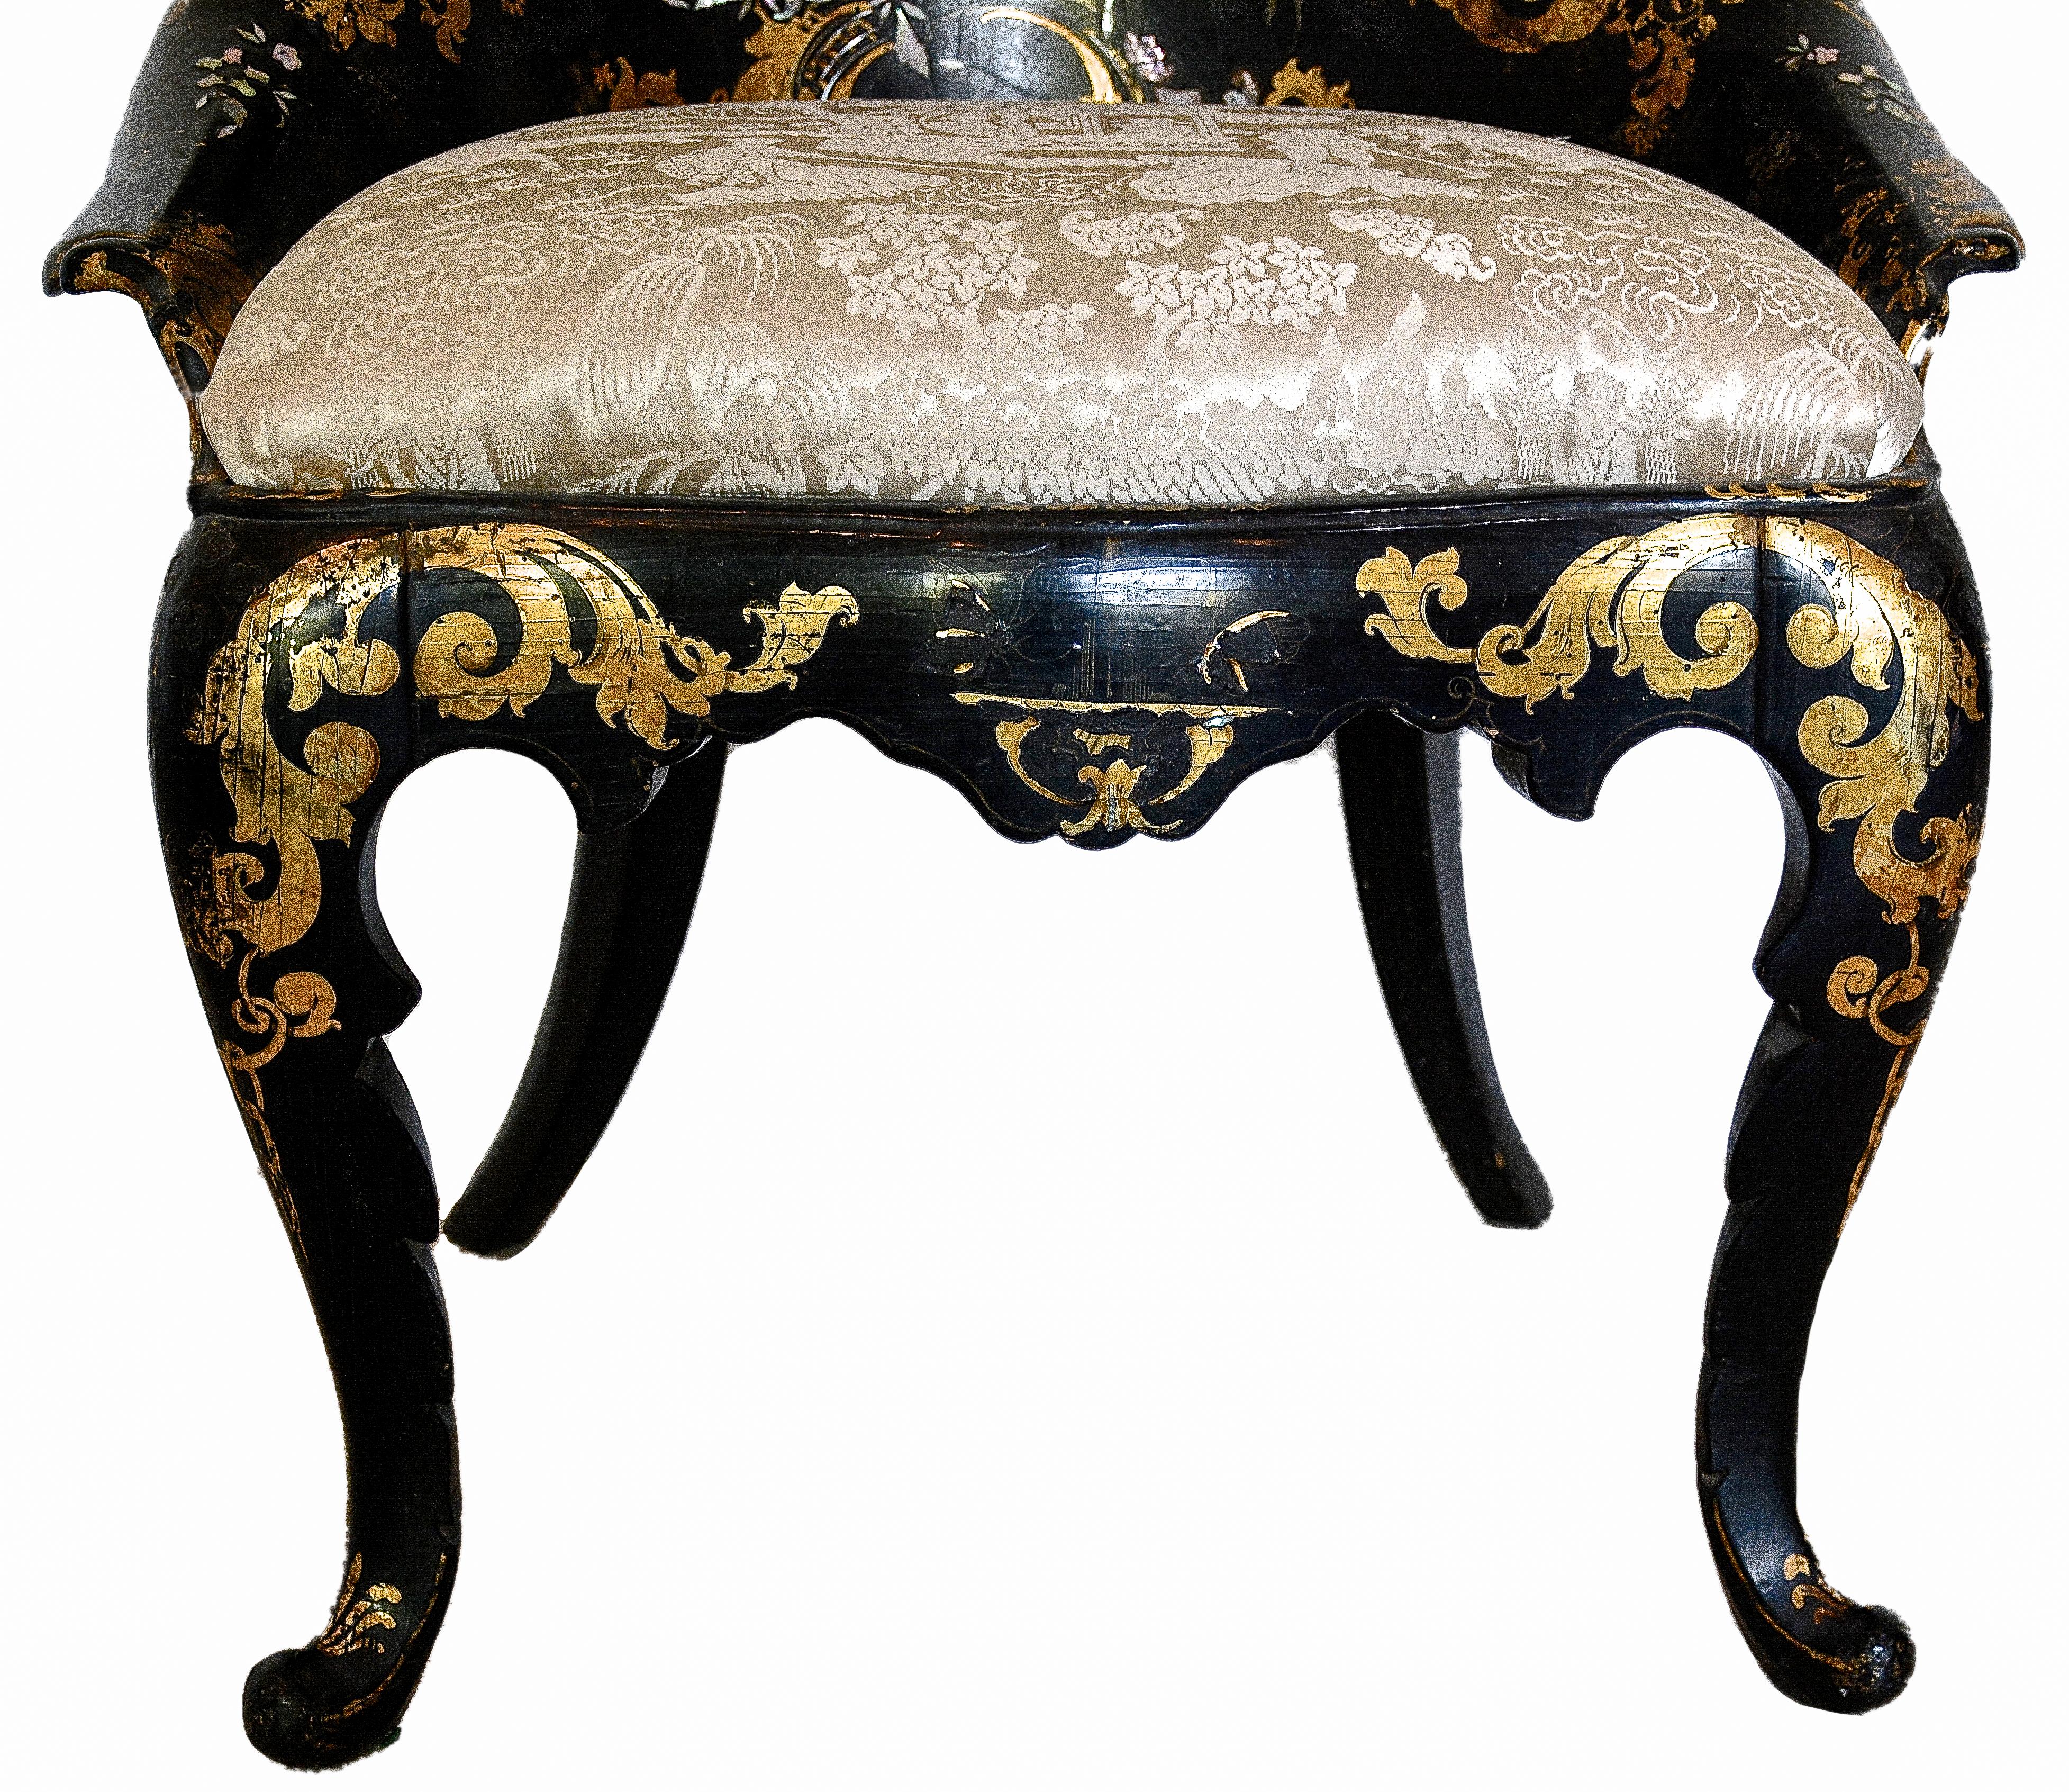 Chaise victorienne du XIXe siècle en papier mâché incrusté de nacre et doré.

Cette chaise aux formes élégantes est ornée de motifs de fleurs et d'oiseaux en vol incrustés de nacre, soulignés par des ornements dorés. Le dossier festonné s'incurve